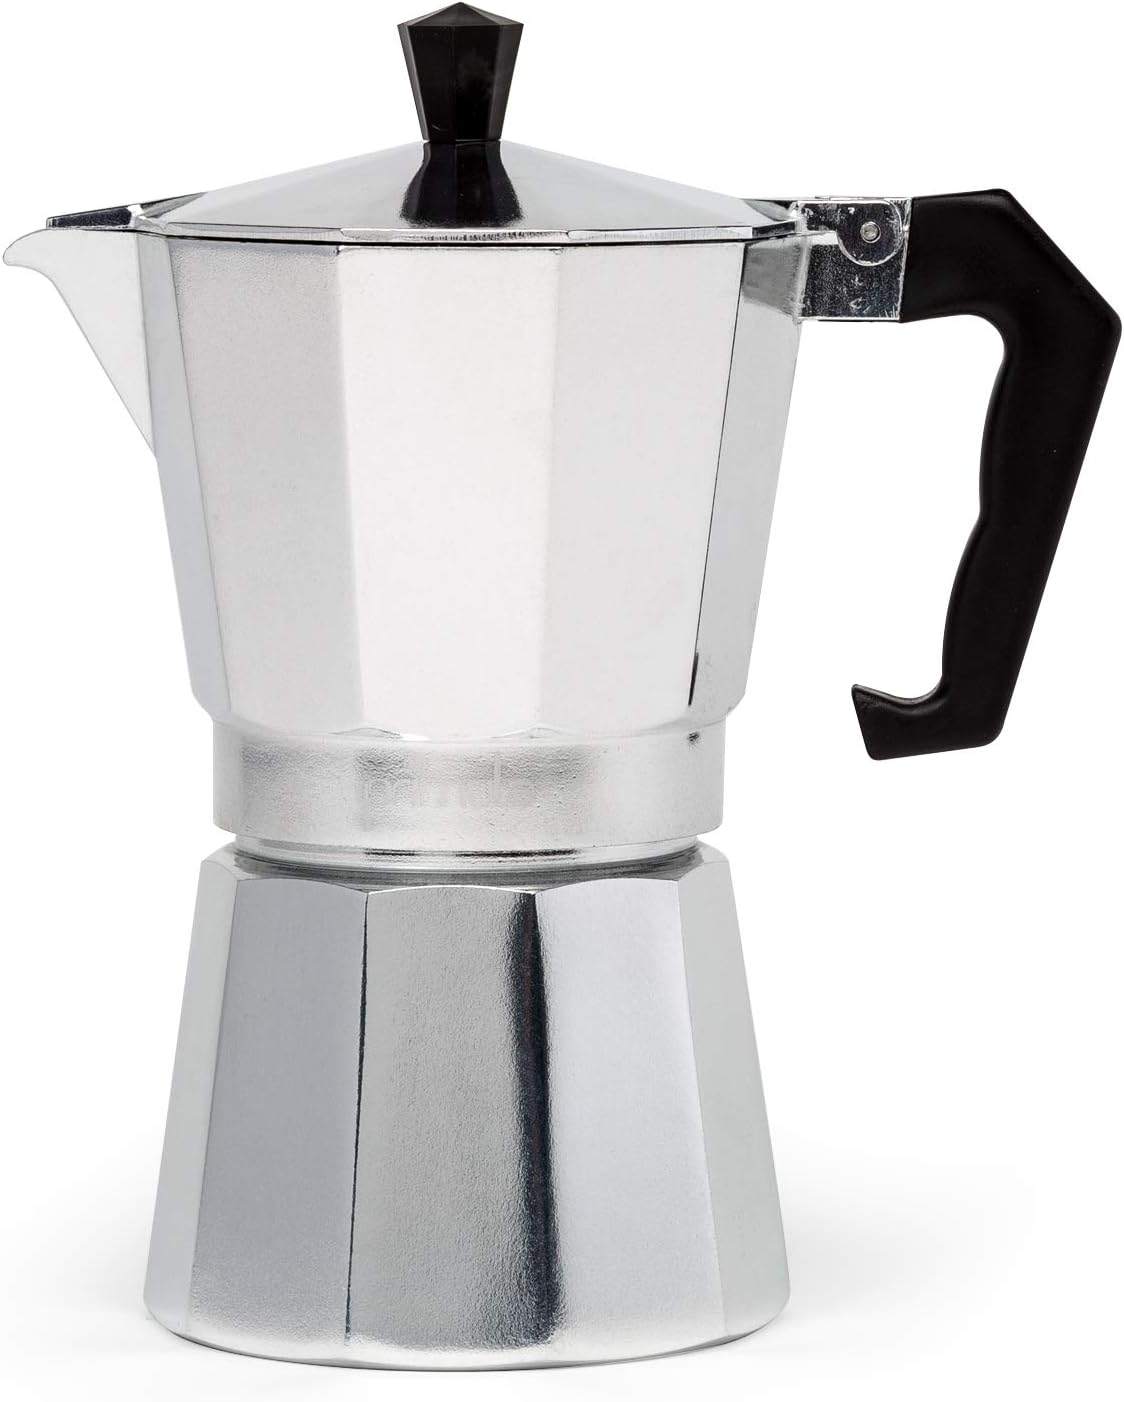 Primula Classic Stovetop Espresso and Coffee Maker Review